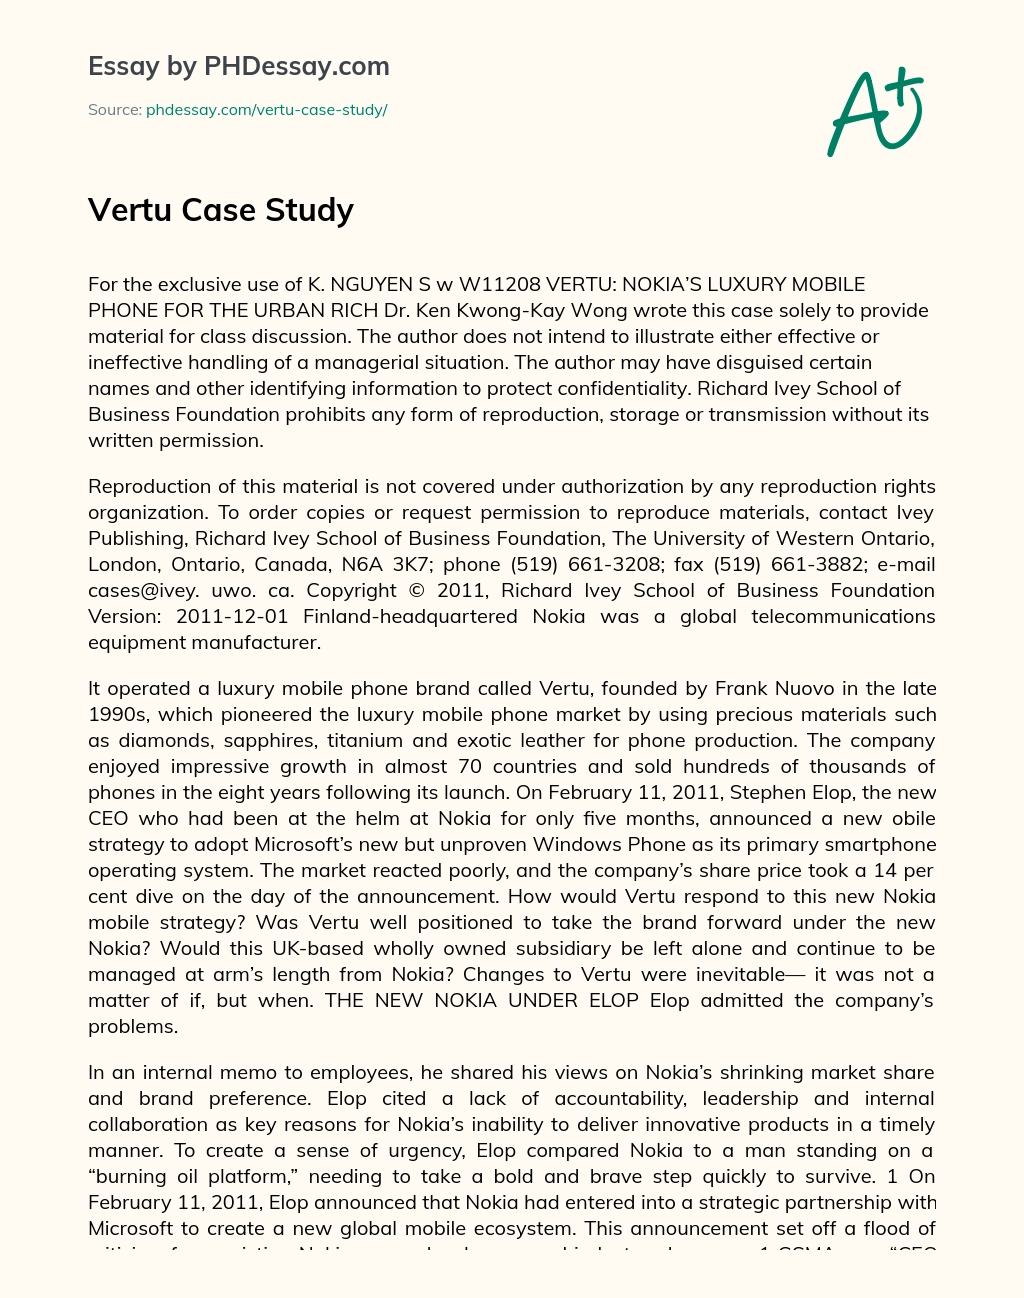 Vertu Case Study essay